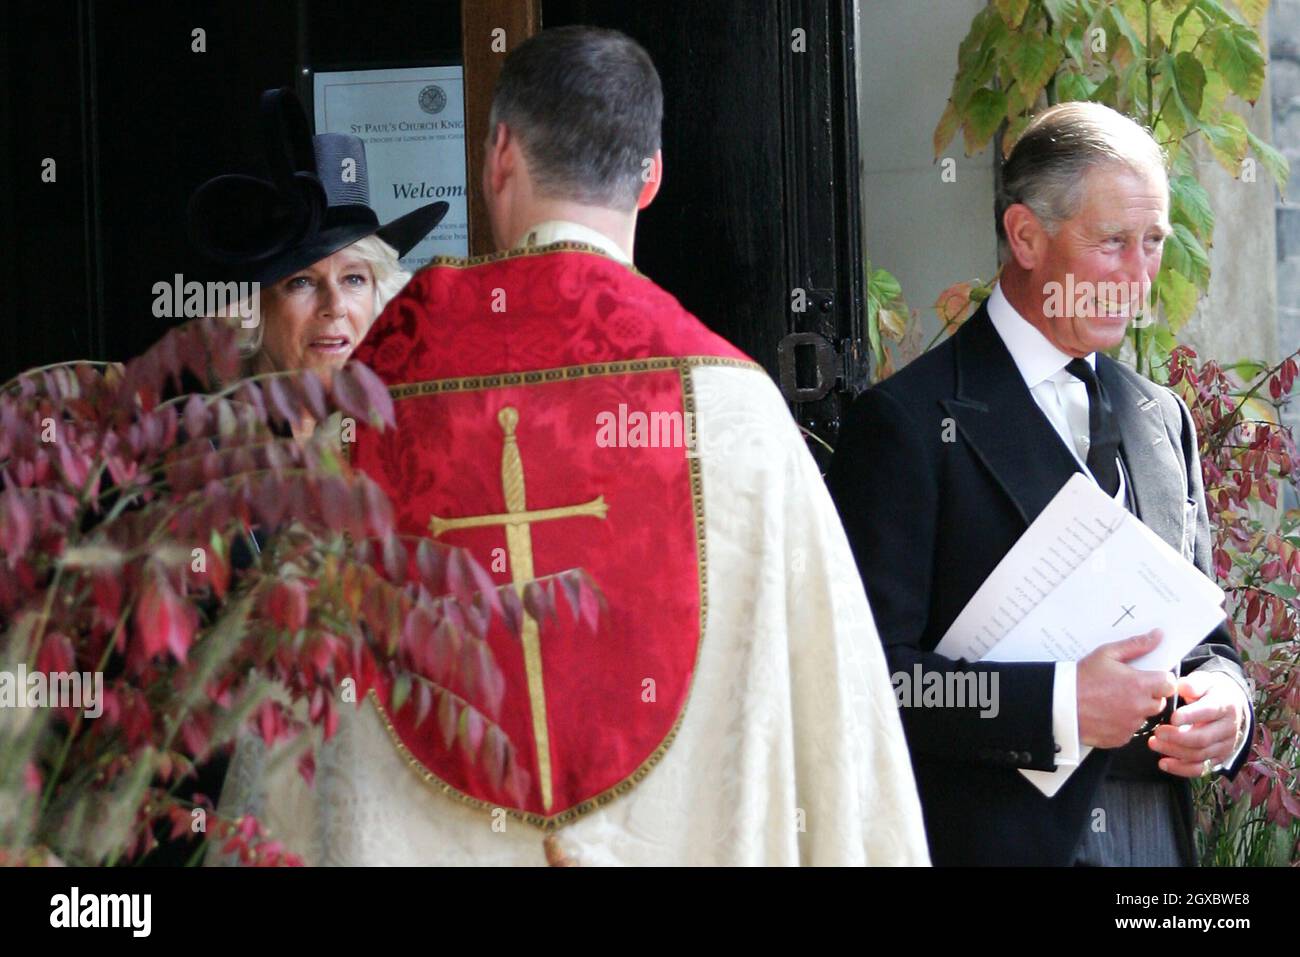 Camilla, Herzogin von Cornwall und Prinz Charles, Prinz von Wales, verlassen die St. Paul's Church in Knightsbridge, nachdem ihr Vater, Major Bruce Shand, am 11. September 2006 in London eine Gedenkfeier abhalten musste. Anwar Hussein/EMPICS Entertainment Stockfoto